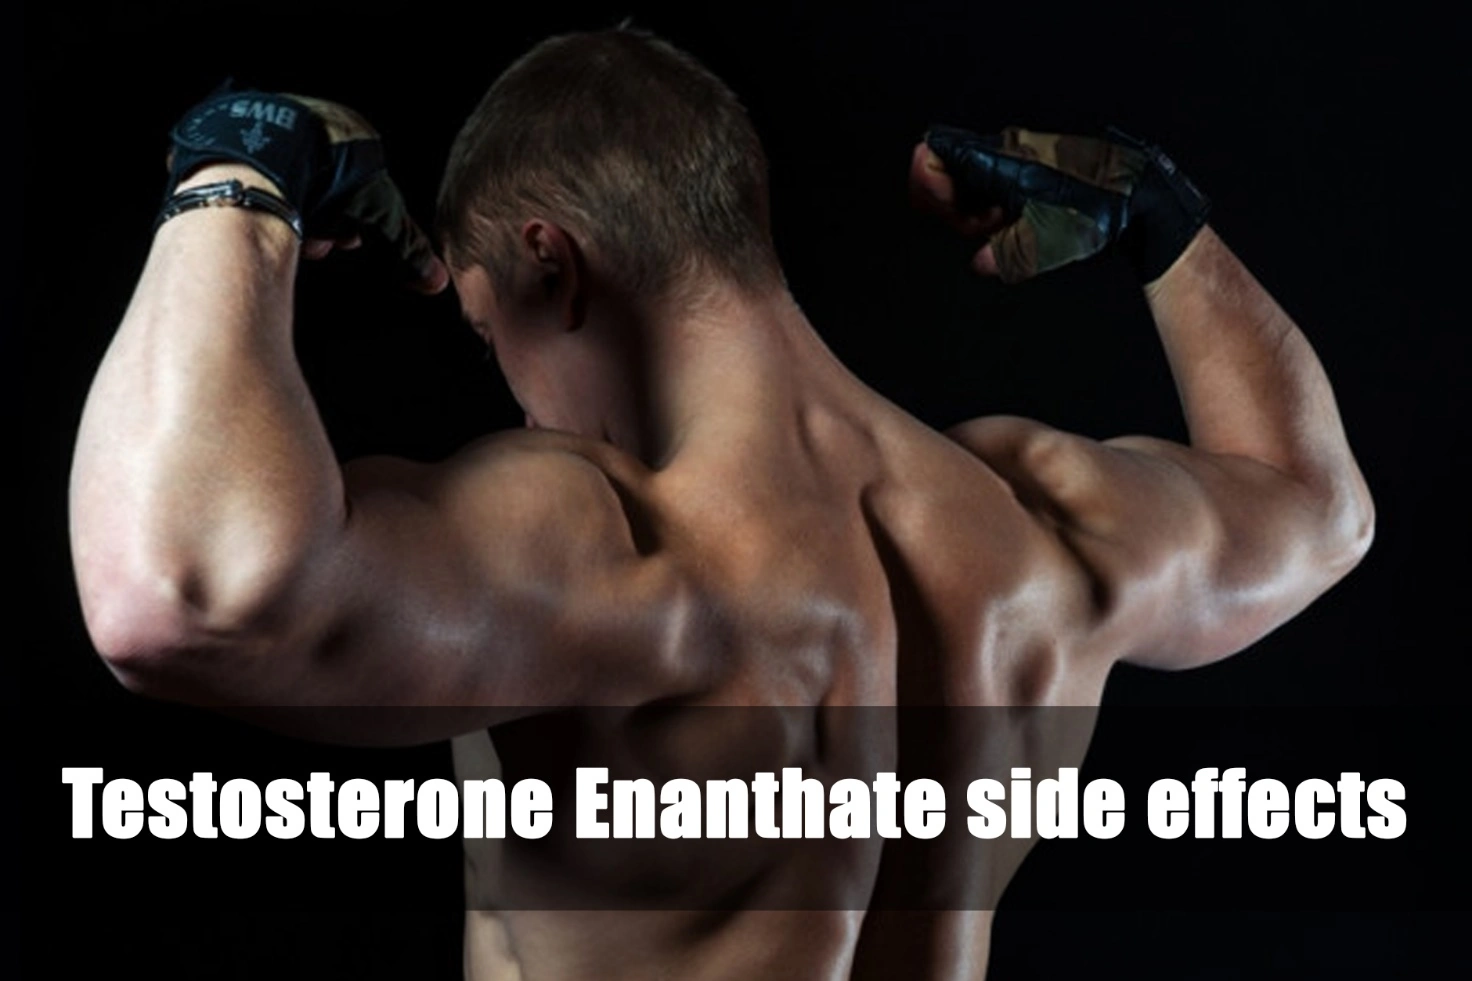 Effetti collaterali del testosterone enantato